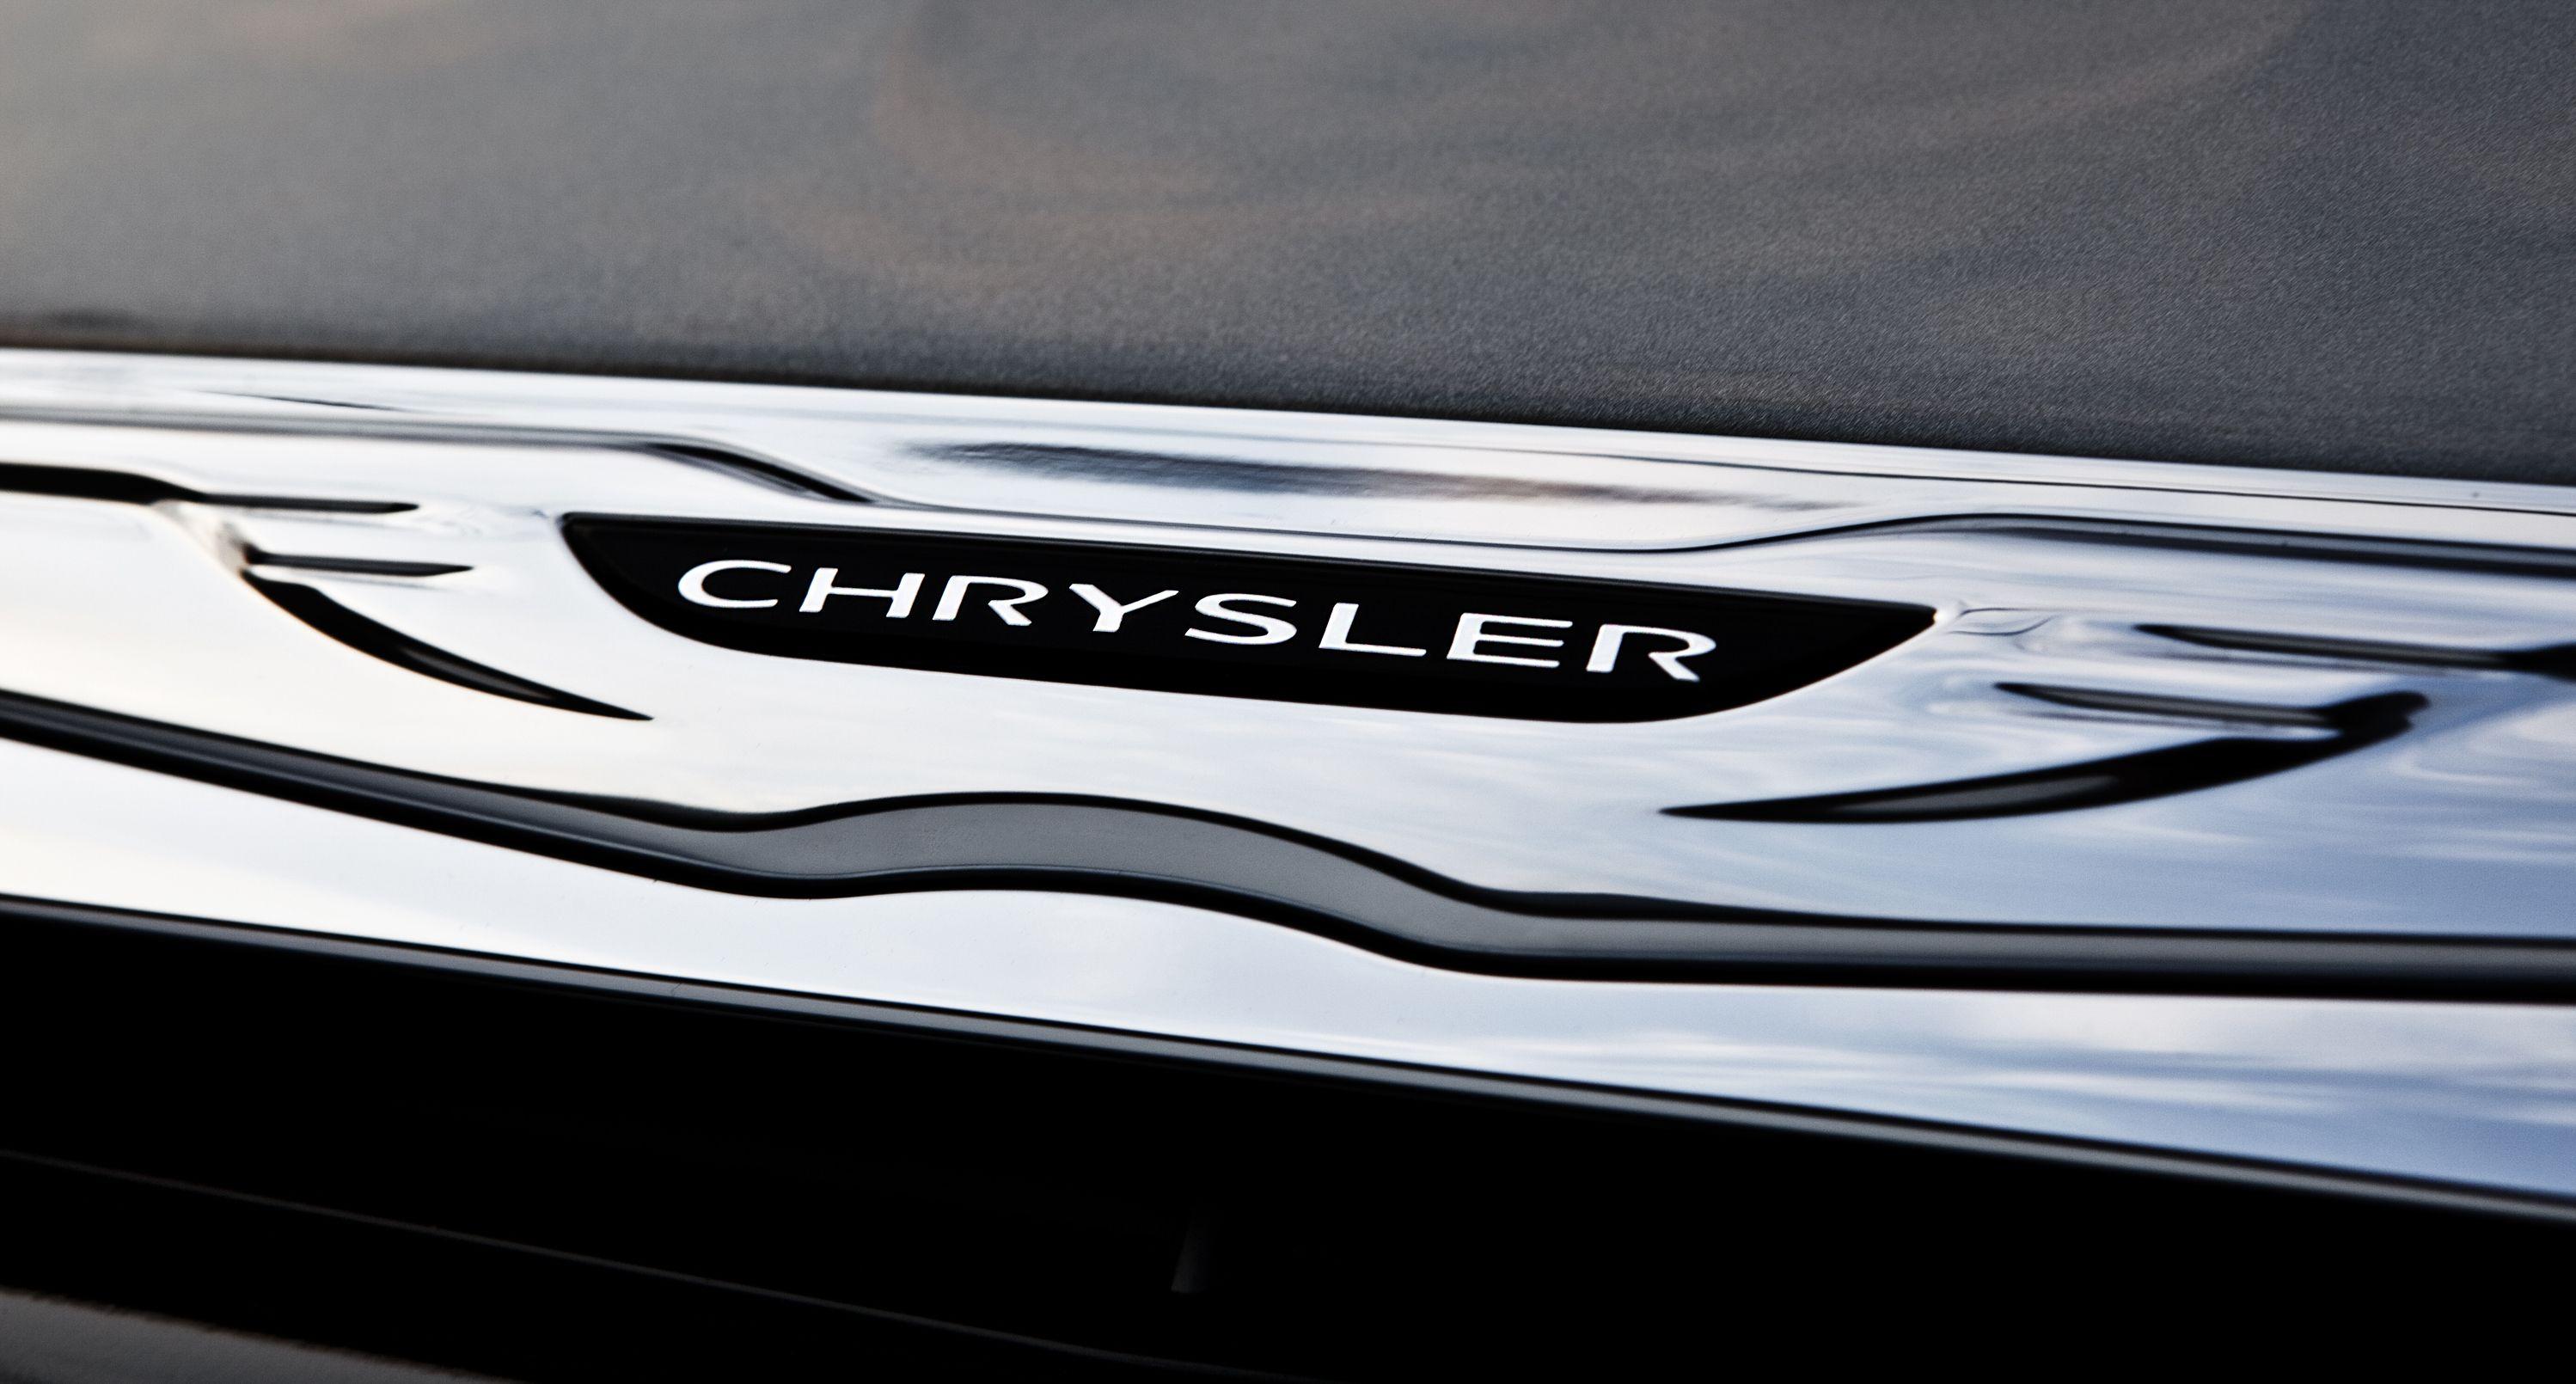 New Chrysler Logo - Chrysler related emblems